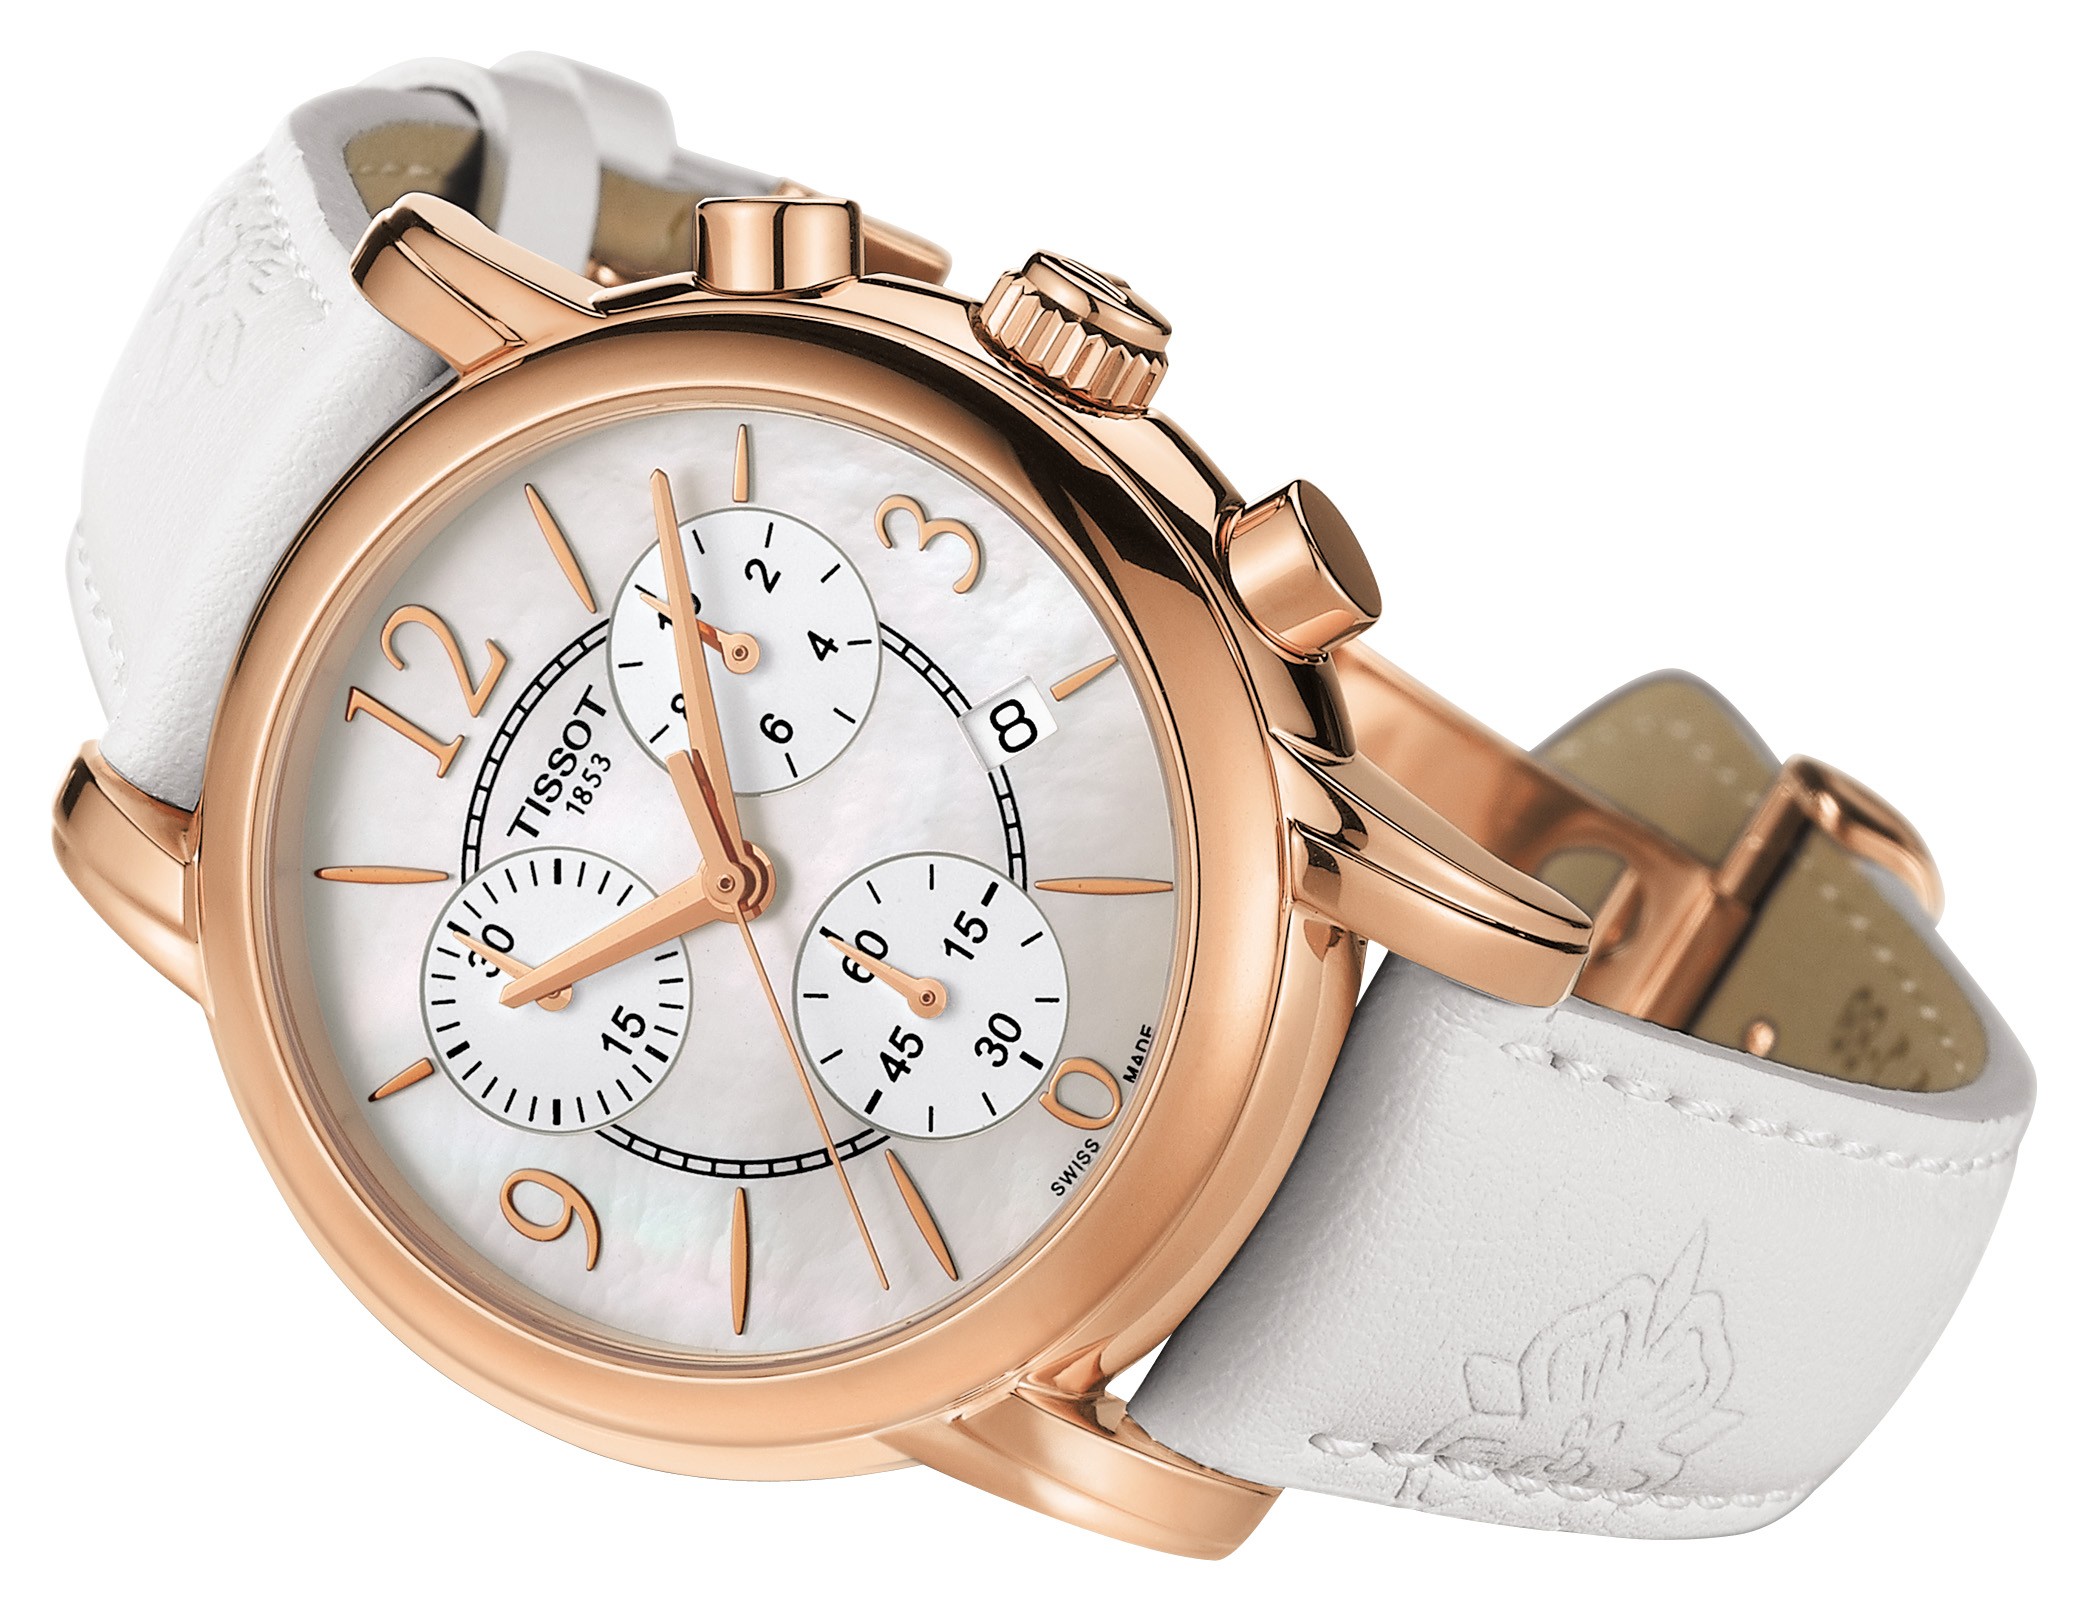 Tissot Watches T-Lady – Tuyệt phẩm dành riêng cho phái đẹp